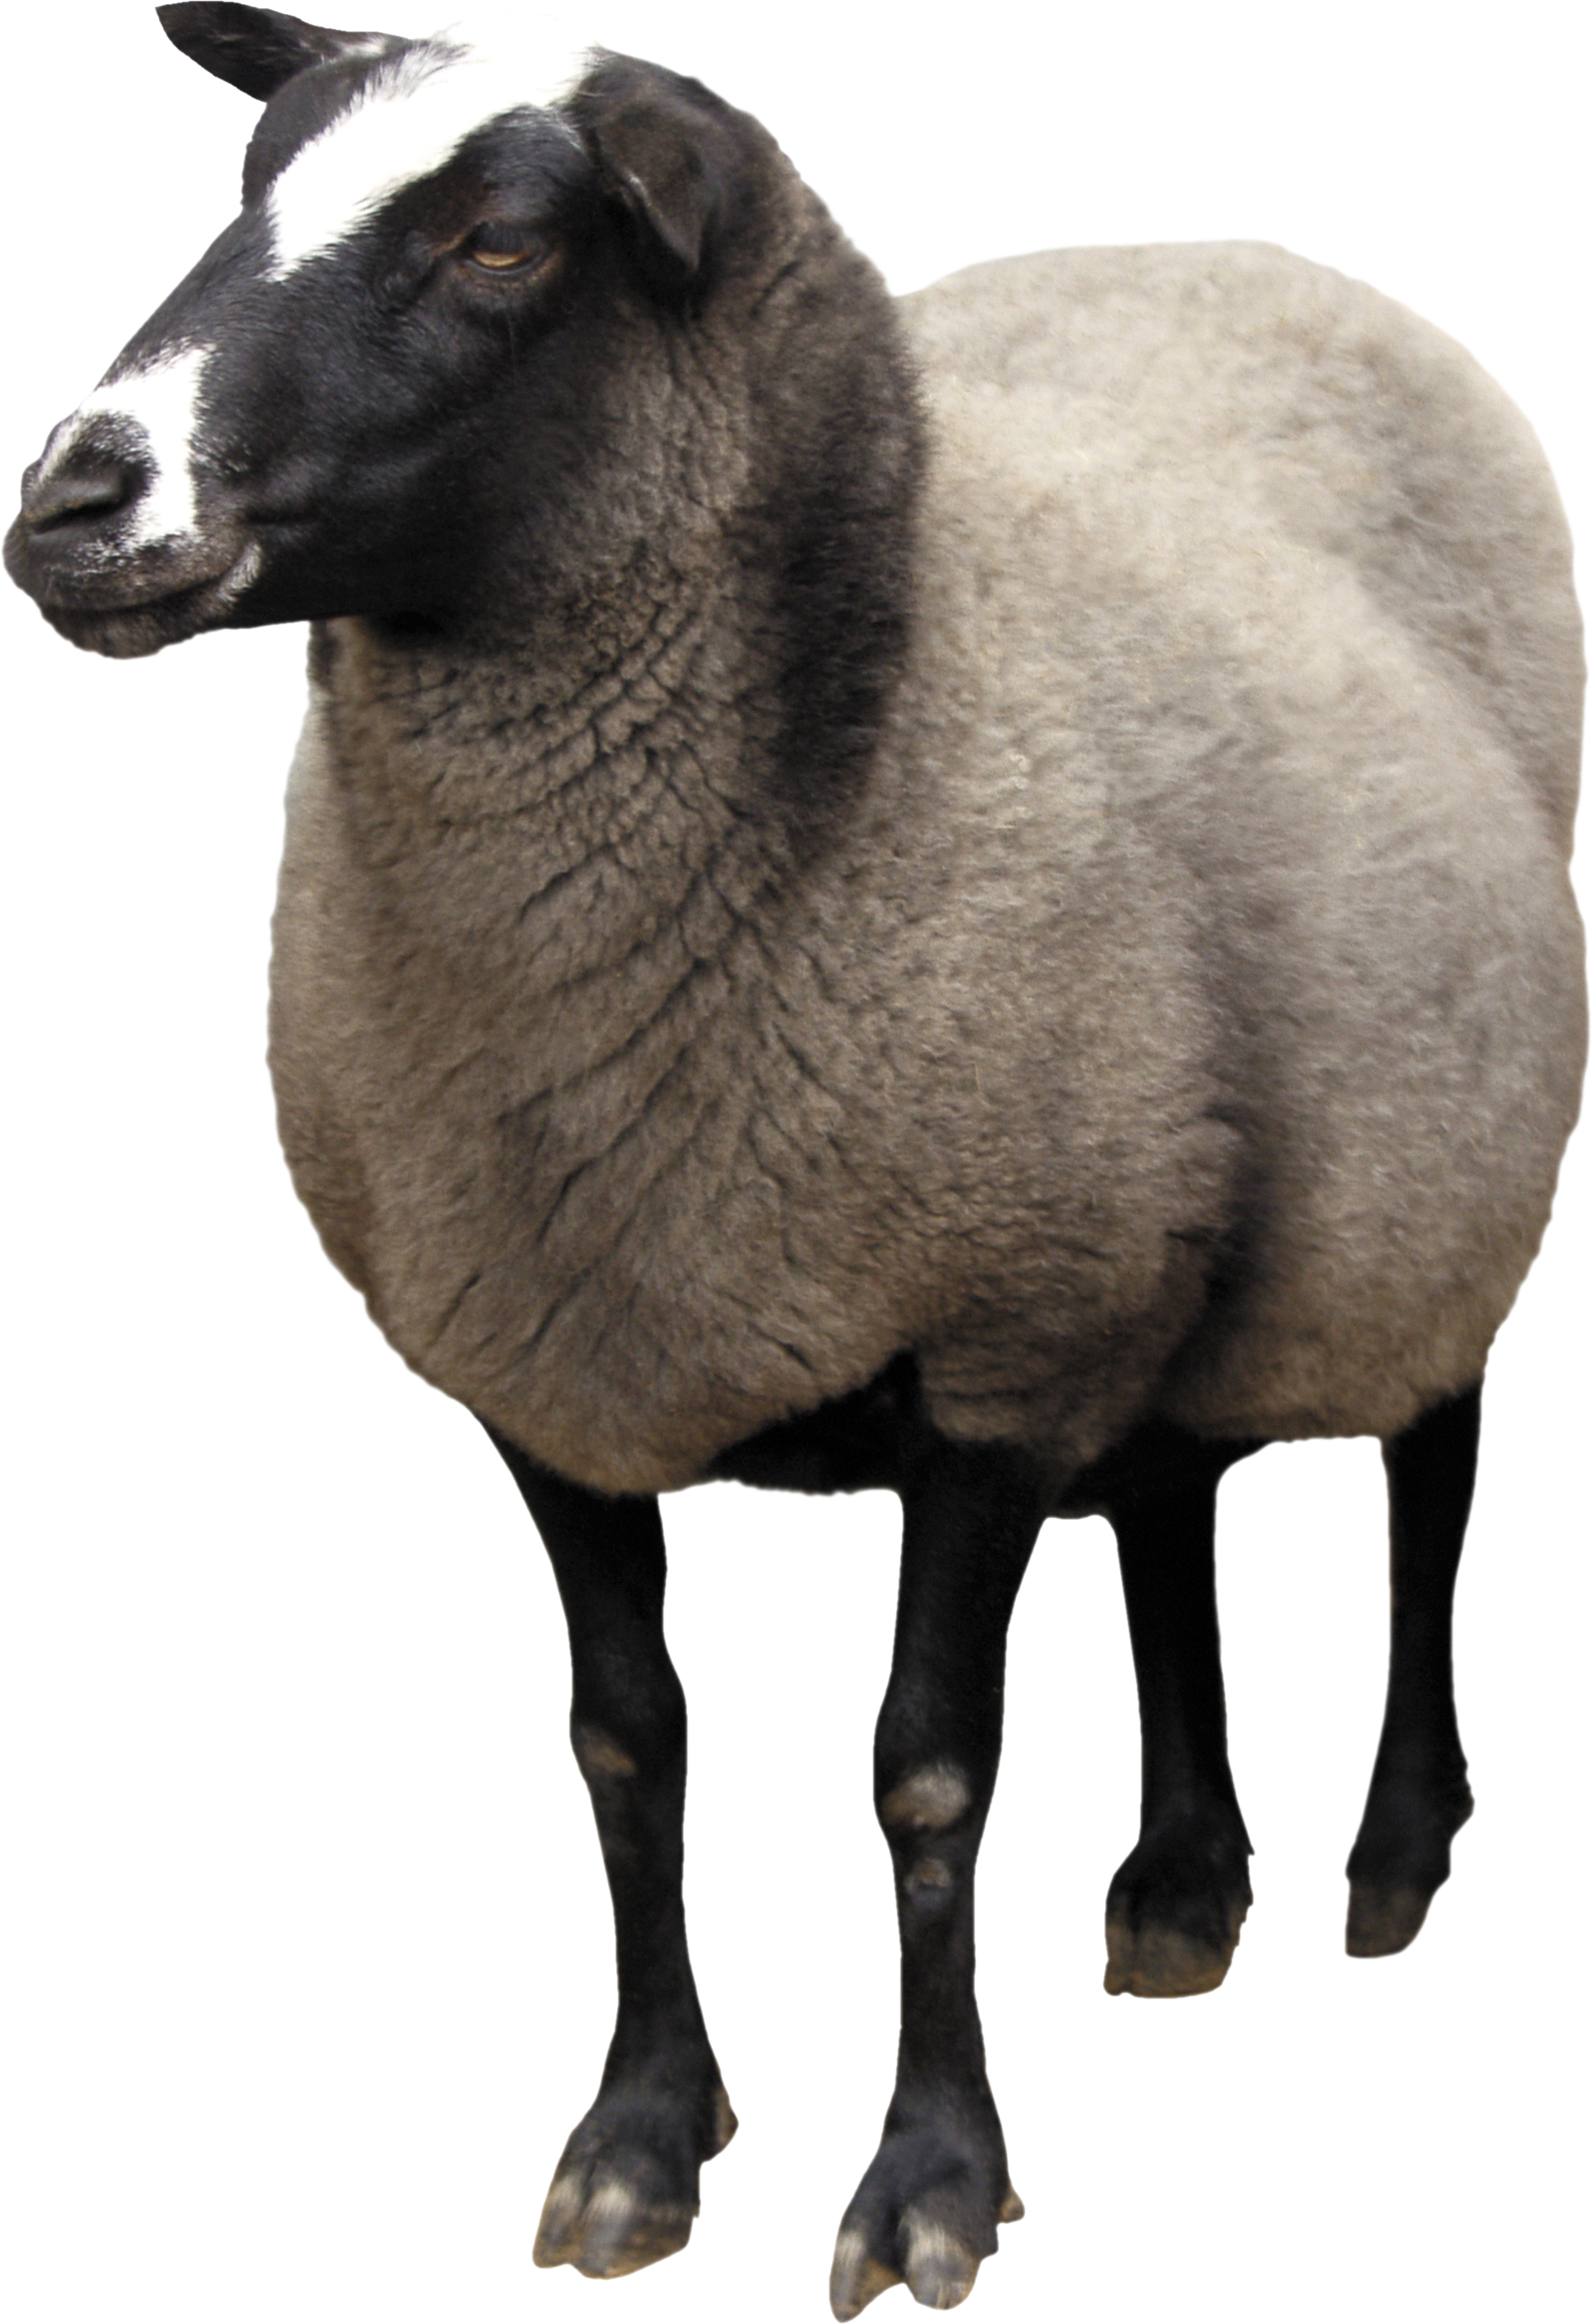 一只羊